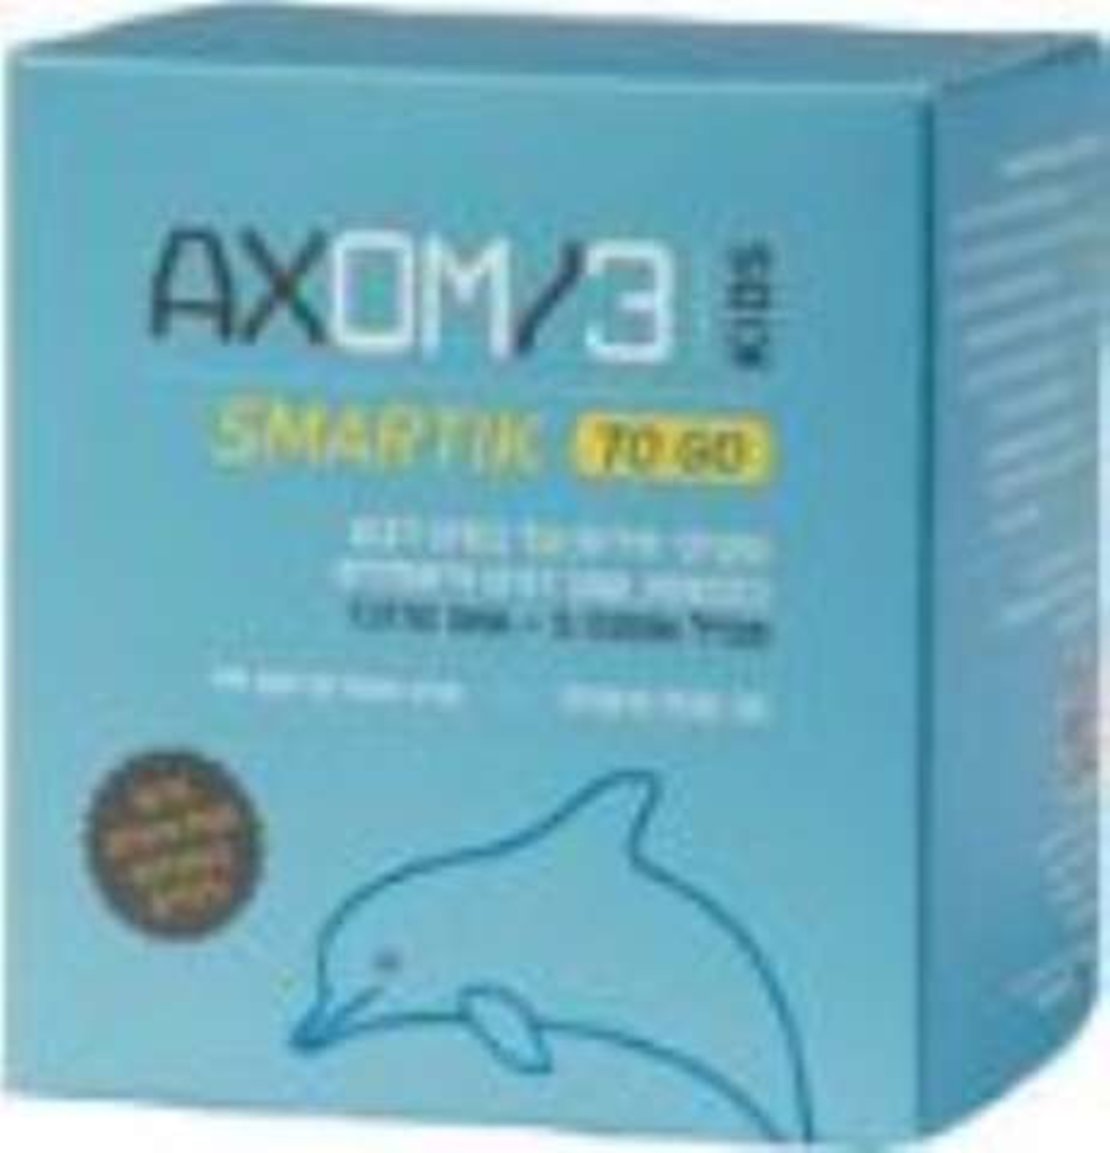 אקסום 3 To Go - שקיקי סירופ DHA לילדים Axom3 Smartik